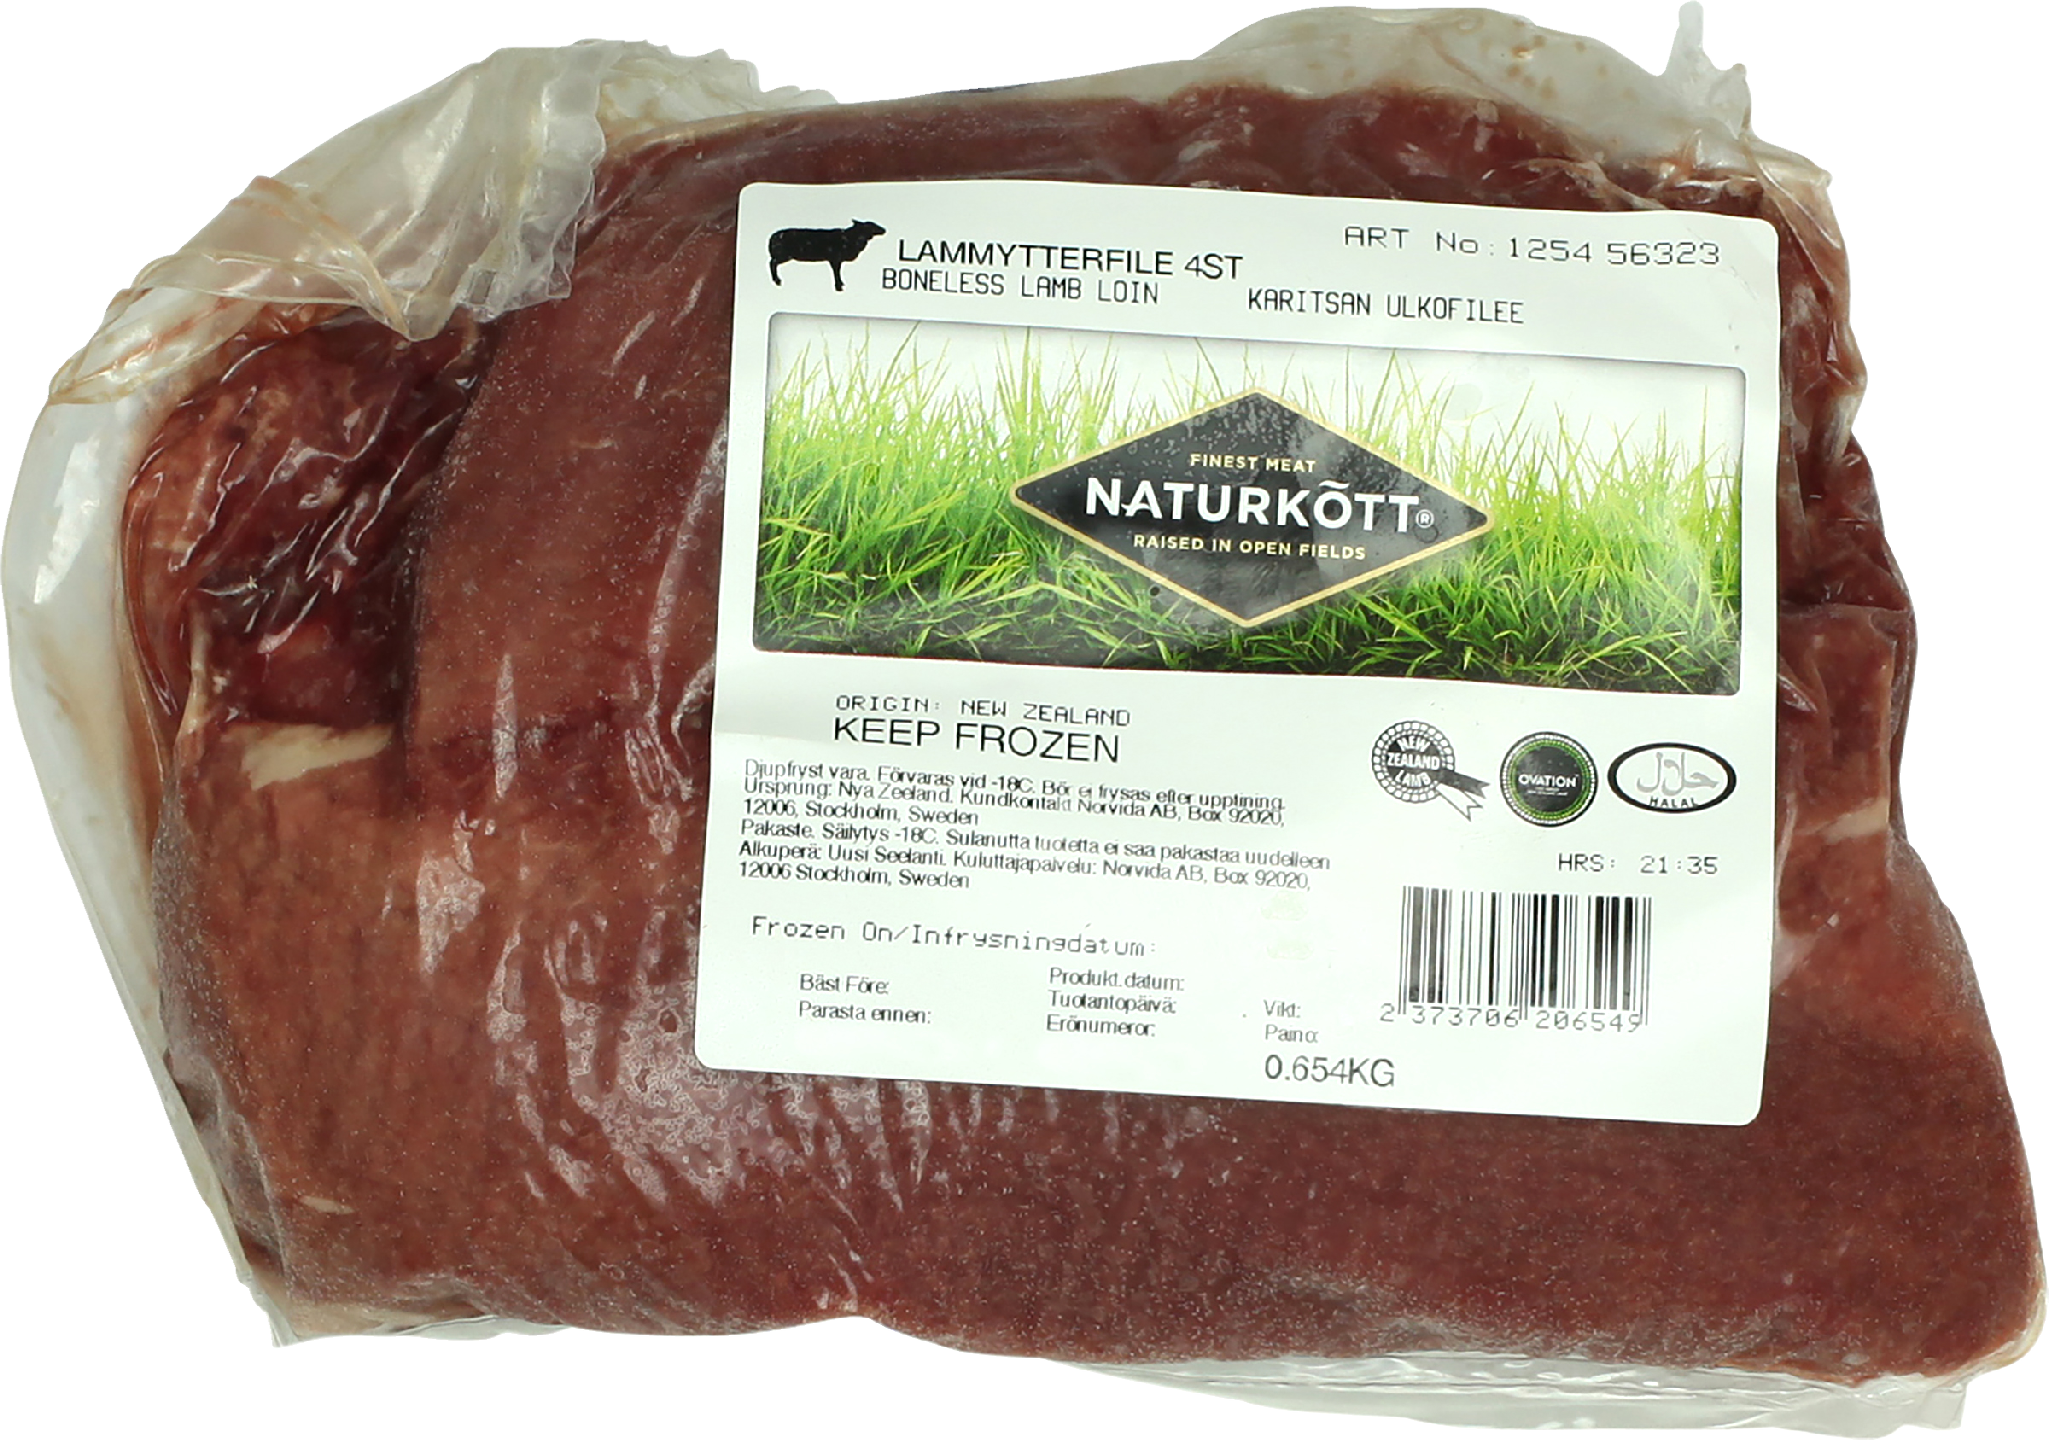 Naturkött karitsan ulkofilee n. 800 g pakaste